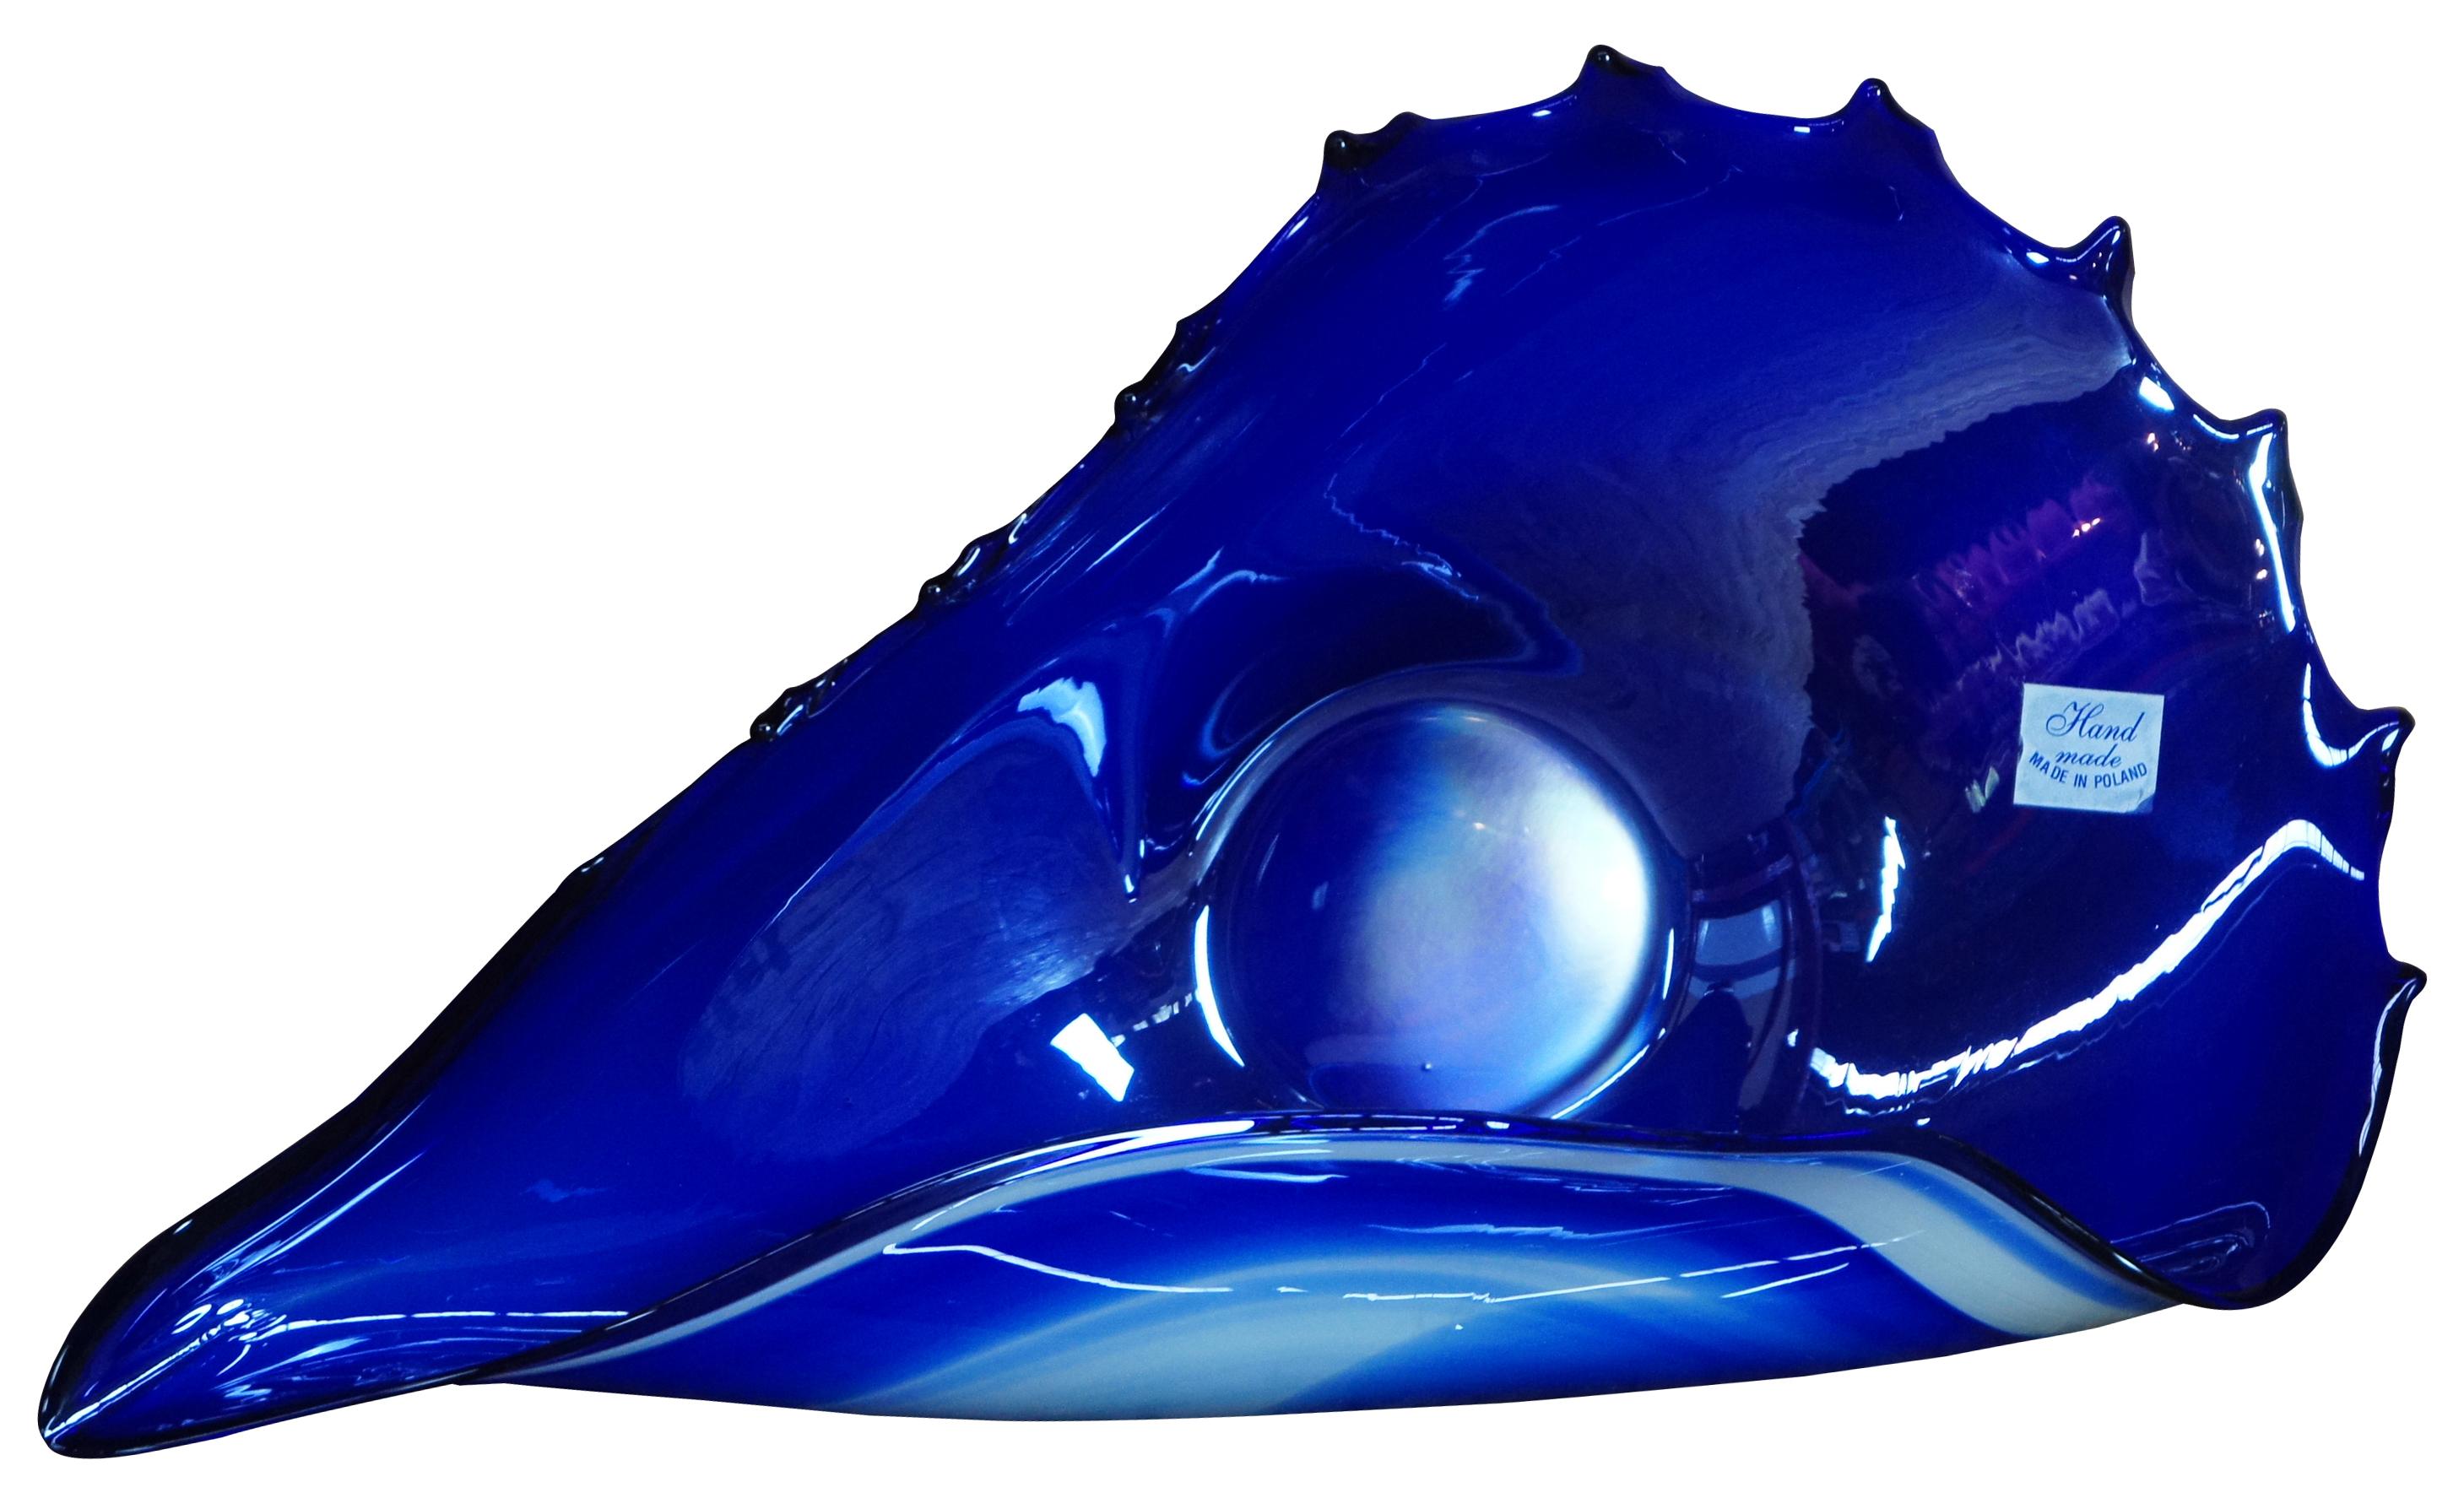 Vintage-Schale aus mundgeblasenem, frei geformtem Studio-Glas in Blau und Weiß, die abstrakt an eine Muschel erinnert, hergestellt in Polen.
  